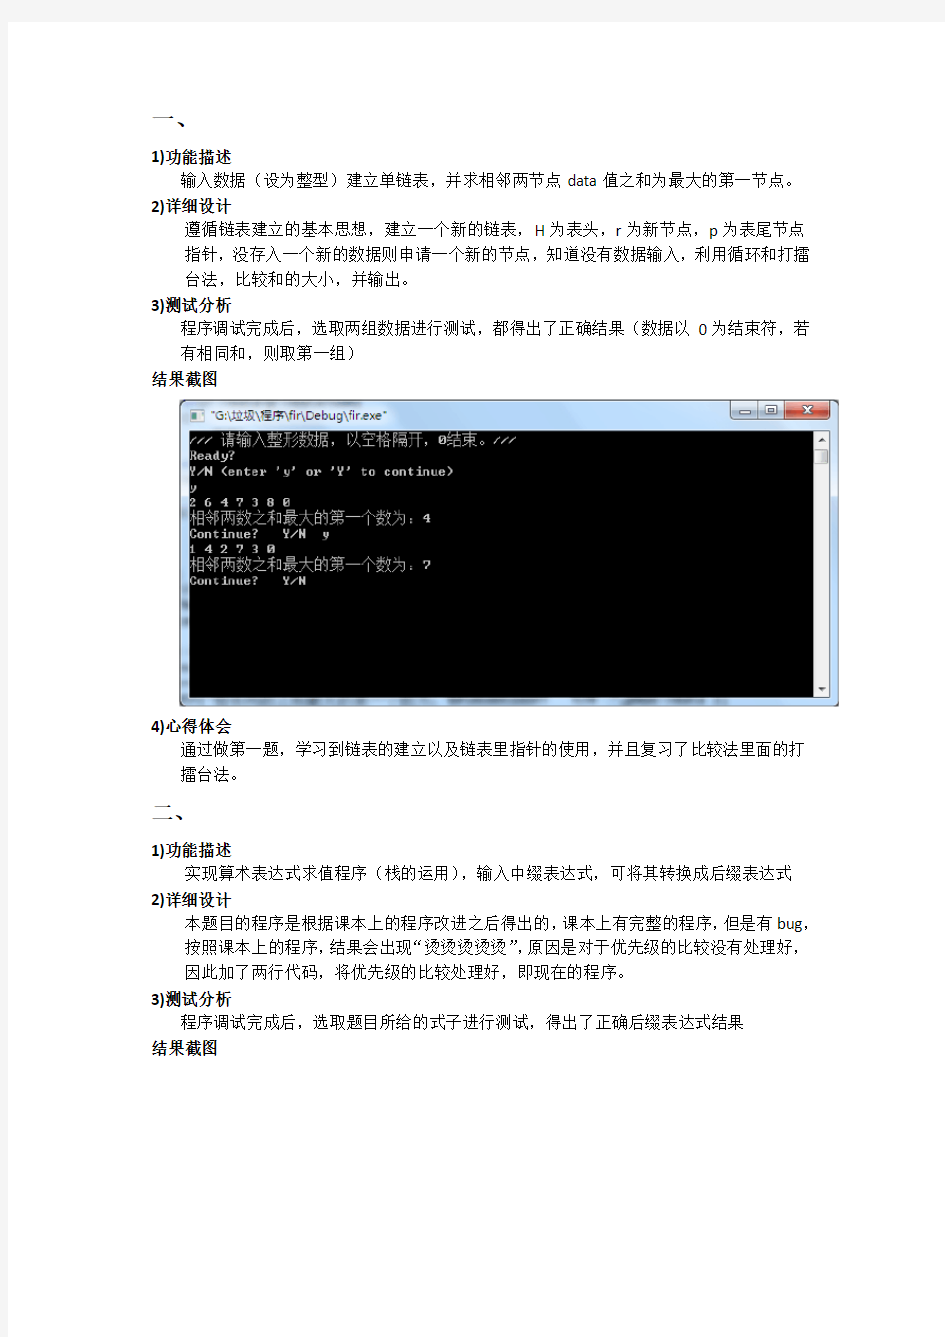 北京科技大学数据结构试验报告(附录含代码)